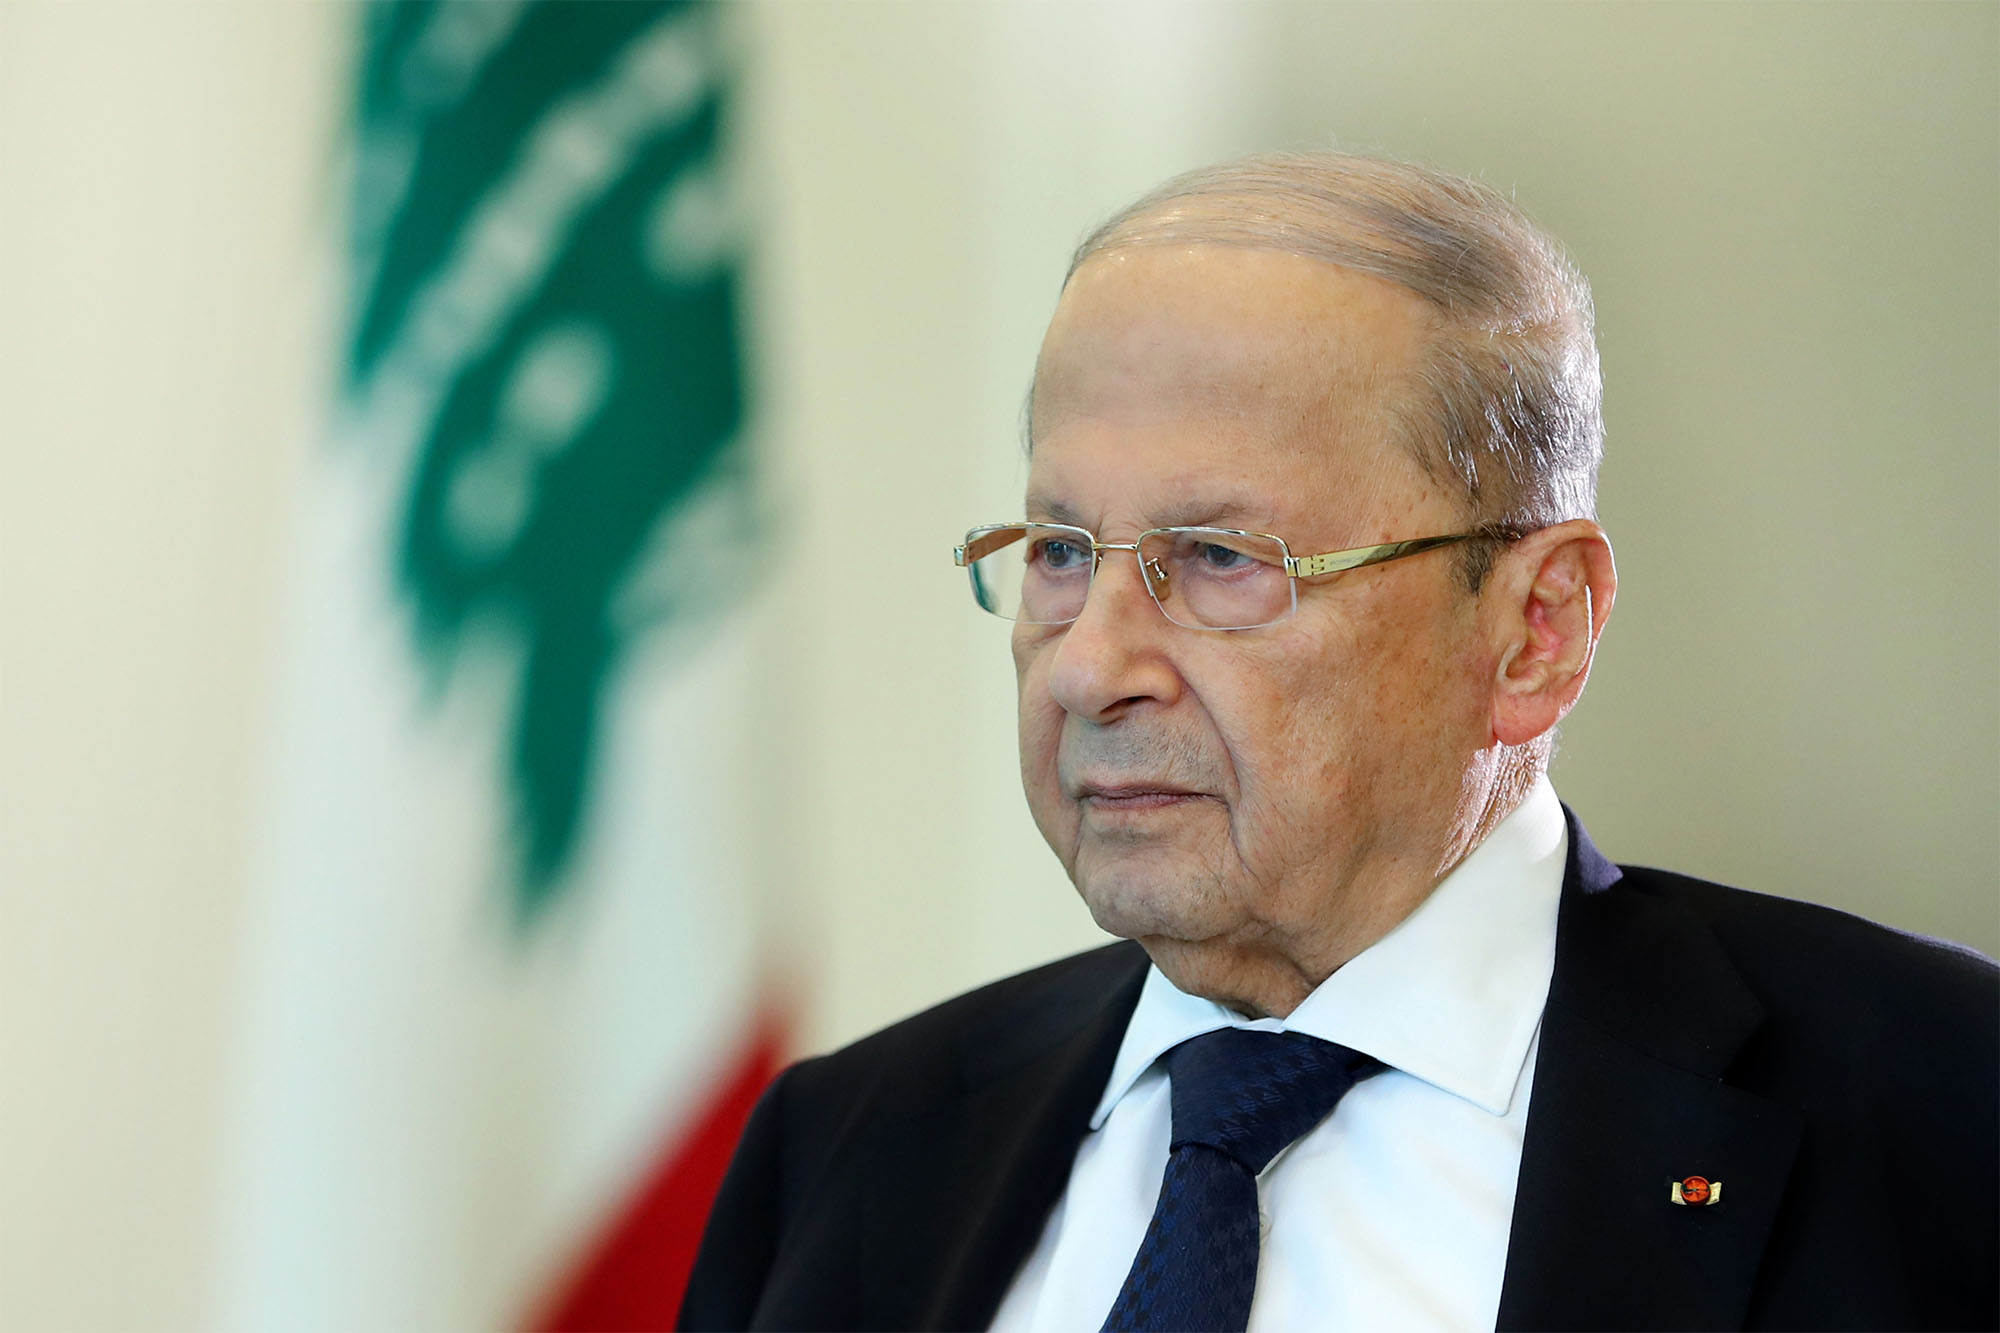 נשיא לבנון, מישל עאון (Photo by LEBANESE PRESIDENCY / HANDOUT/Anadolu Agency via Getty Images)